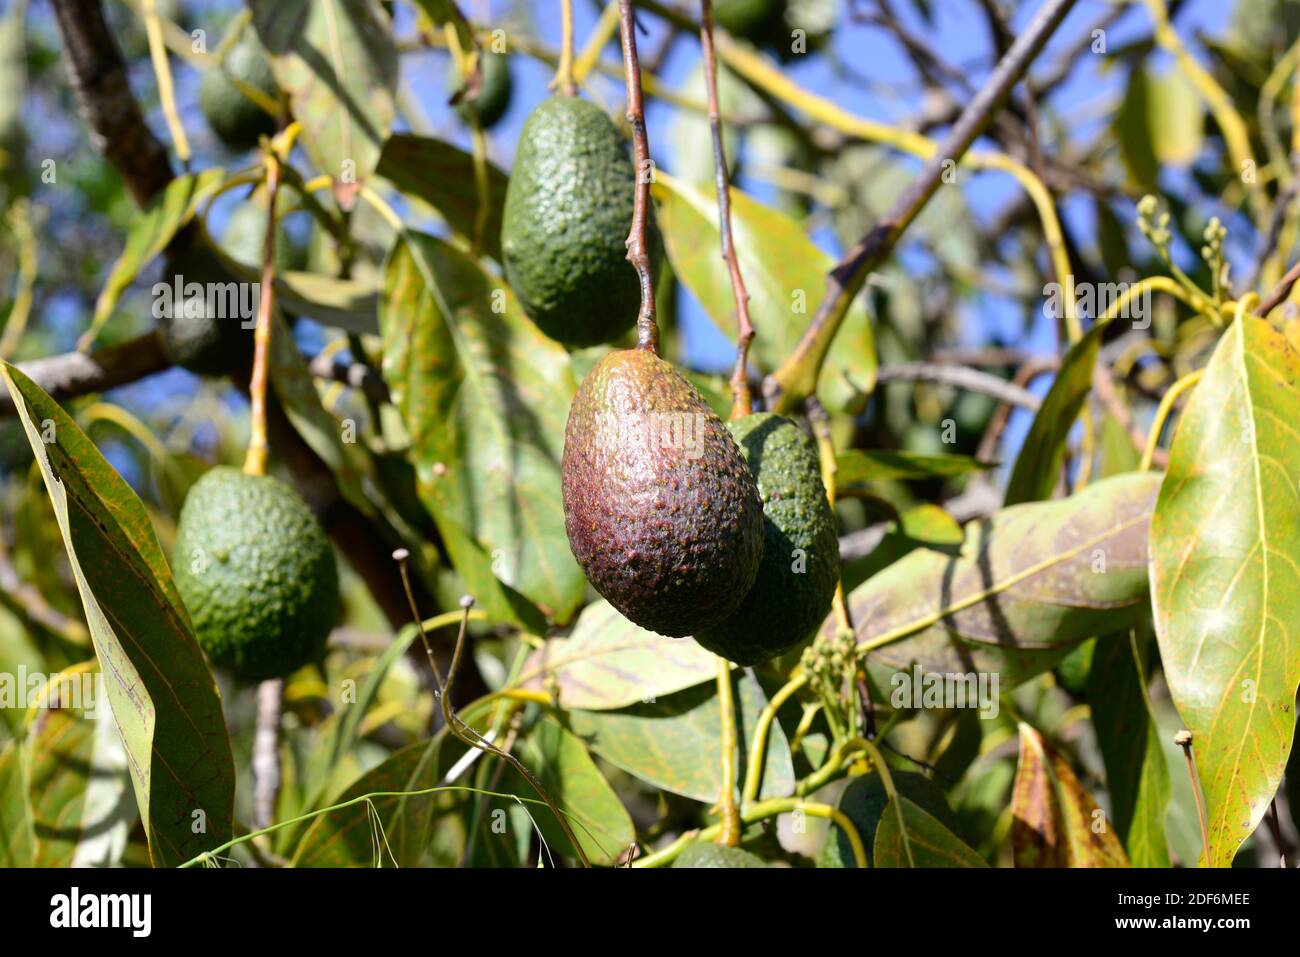 L'avocado (Persea americana) è un albero sempreverde originario del Messico meridionale. I suoi frutti (bacca) sono commestibili. Frutta dettaglio. Foto Stock